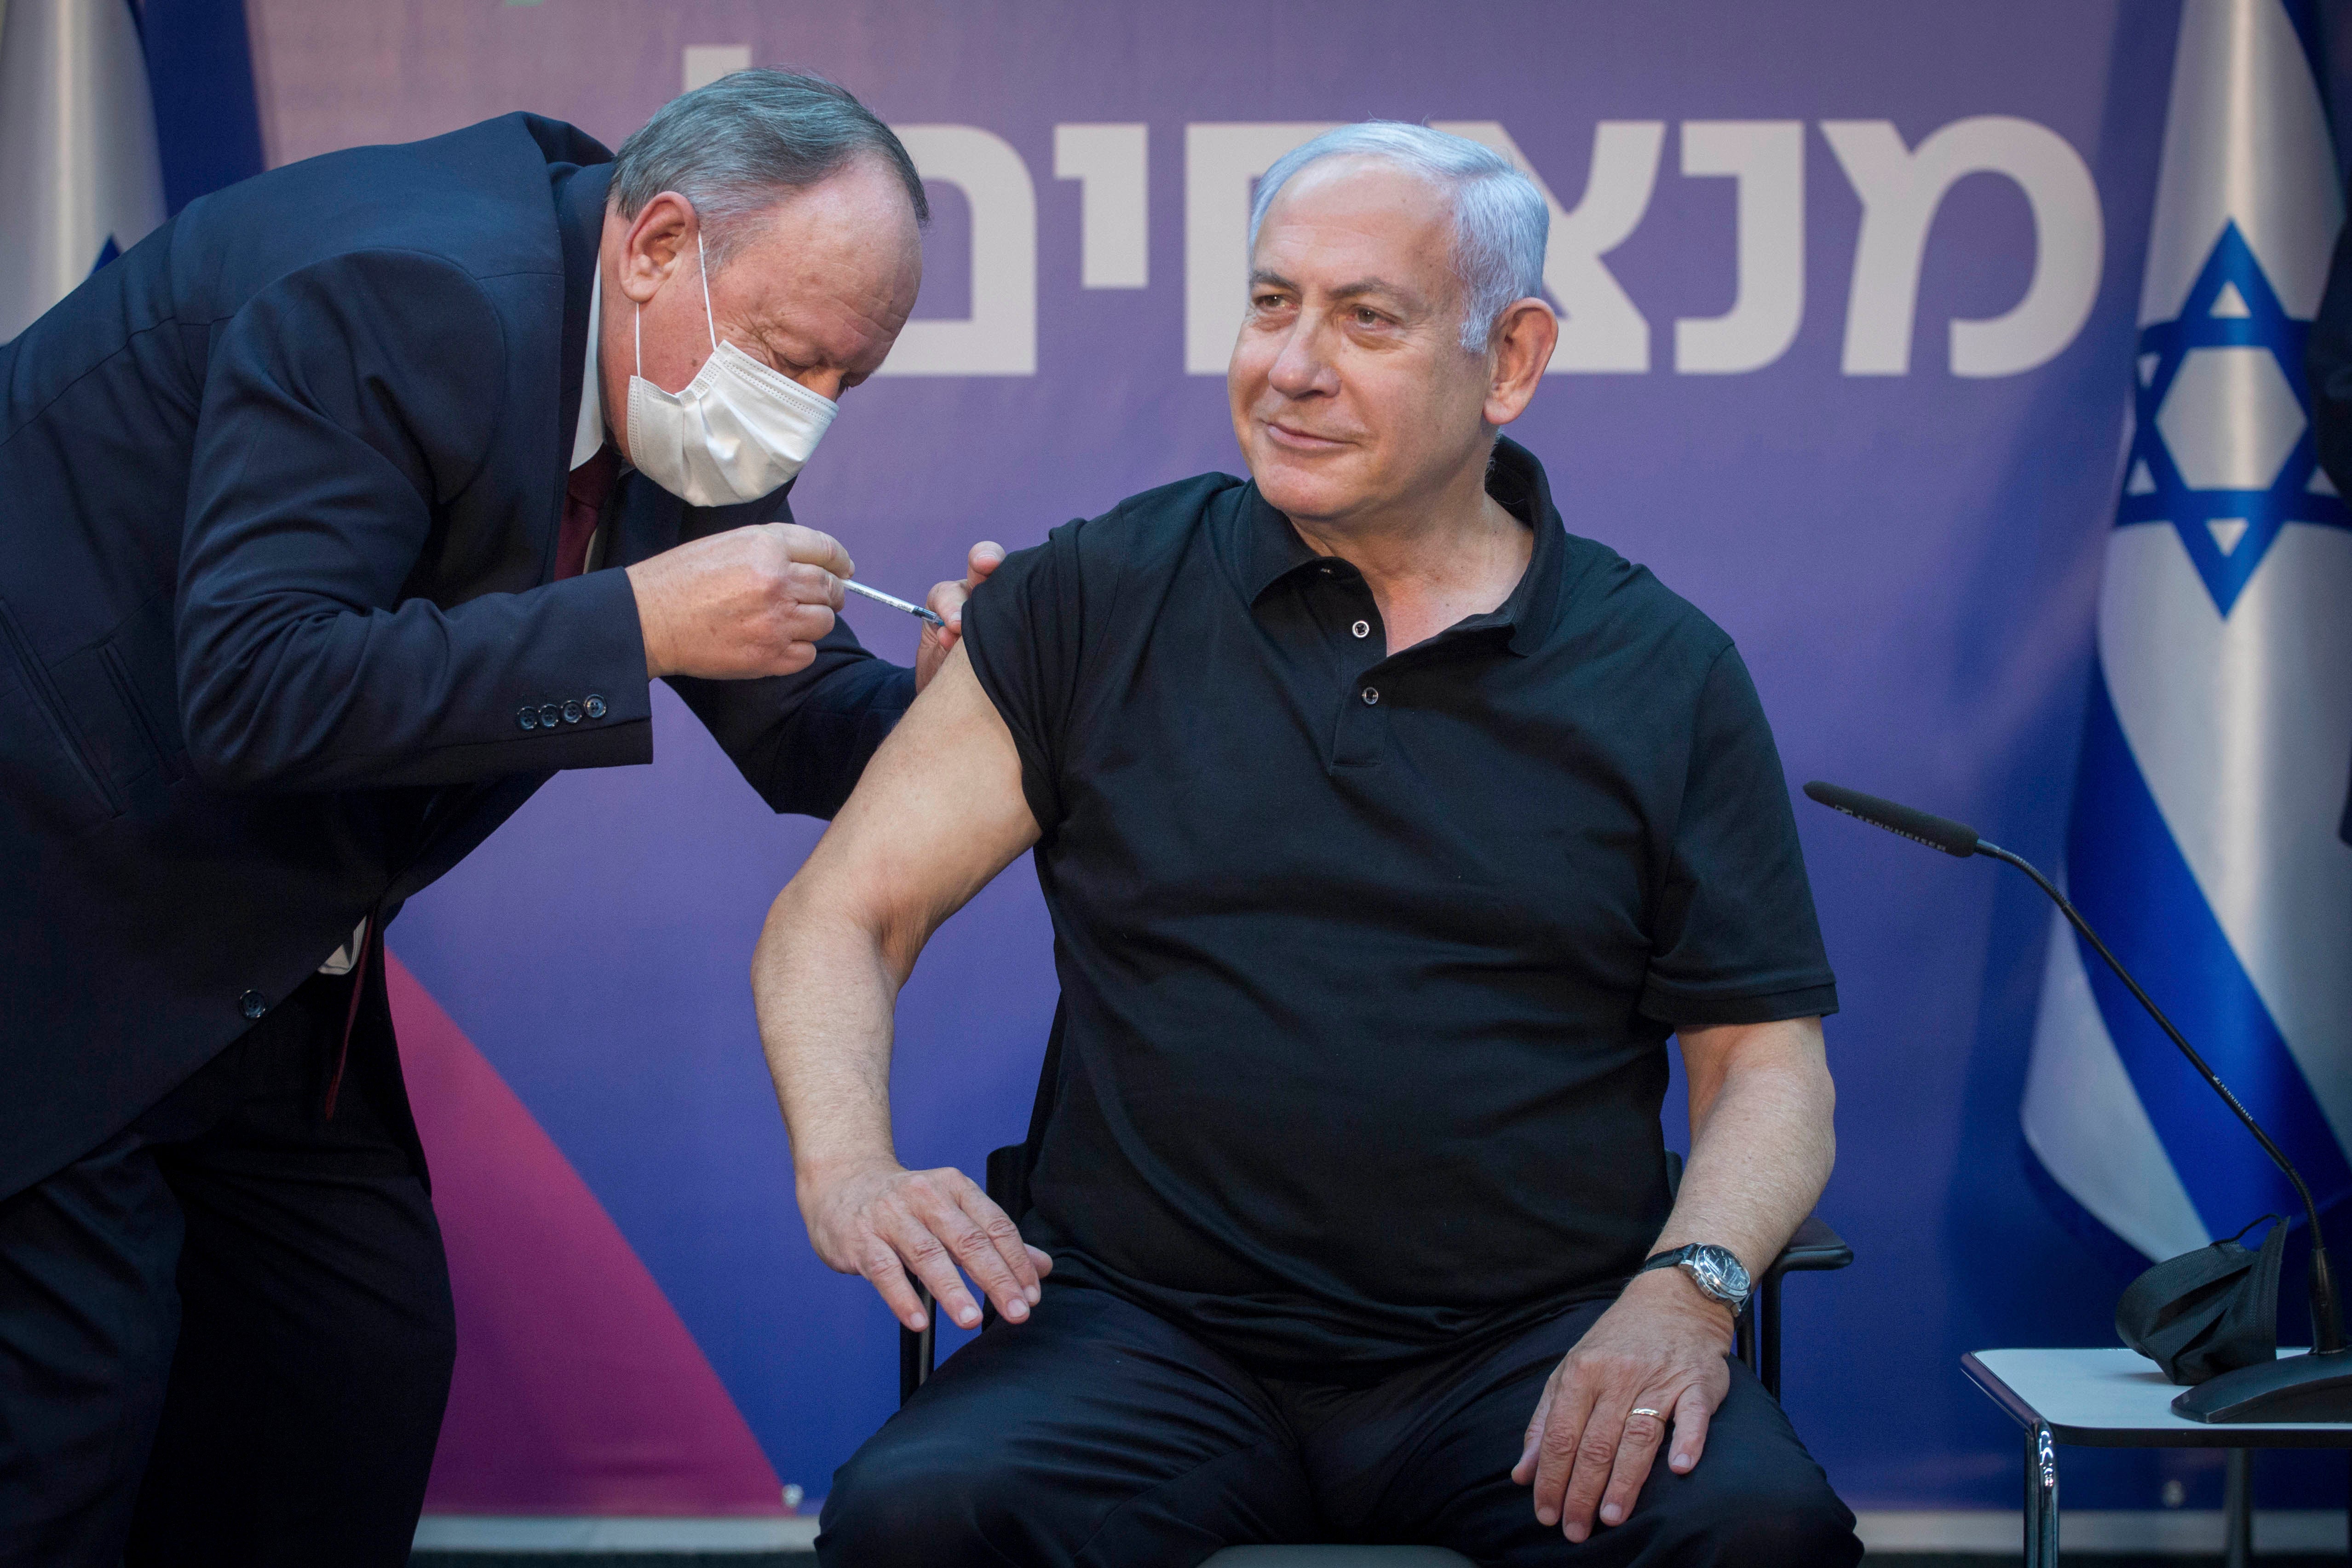 رئيس الوزراء الإسرائيلي بنيامين نتنياهو يتلقى الجرعة الثانية من لقاح فيروس كورونا في رامات غان، إسرائيل، في 9 يناير/كانون الثاني 2021.